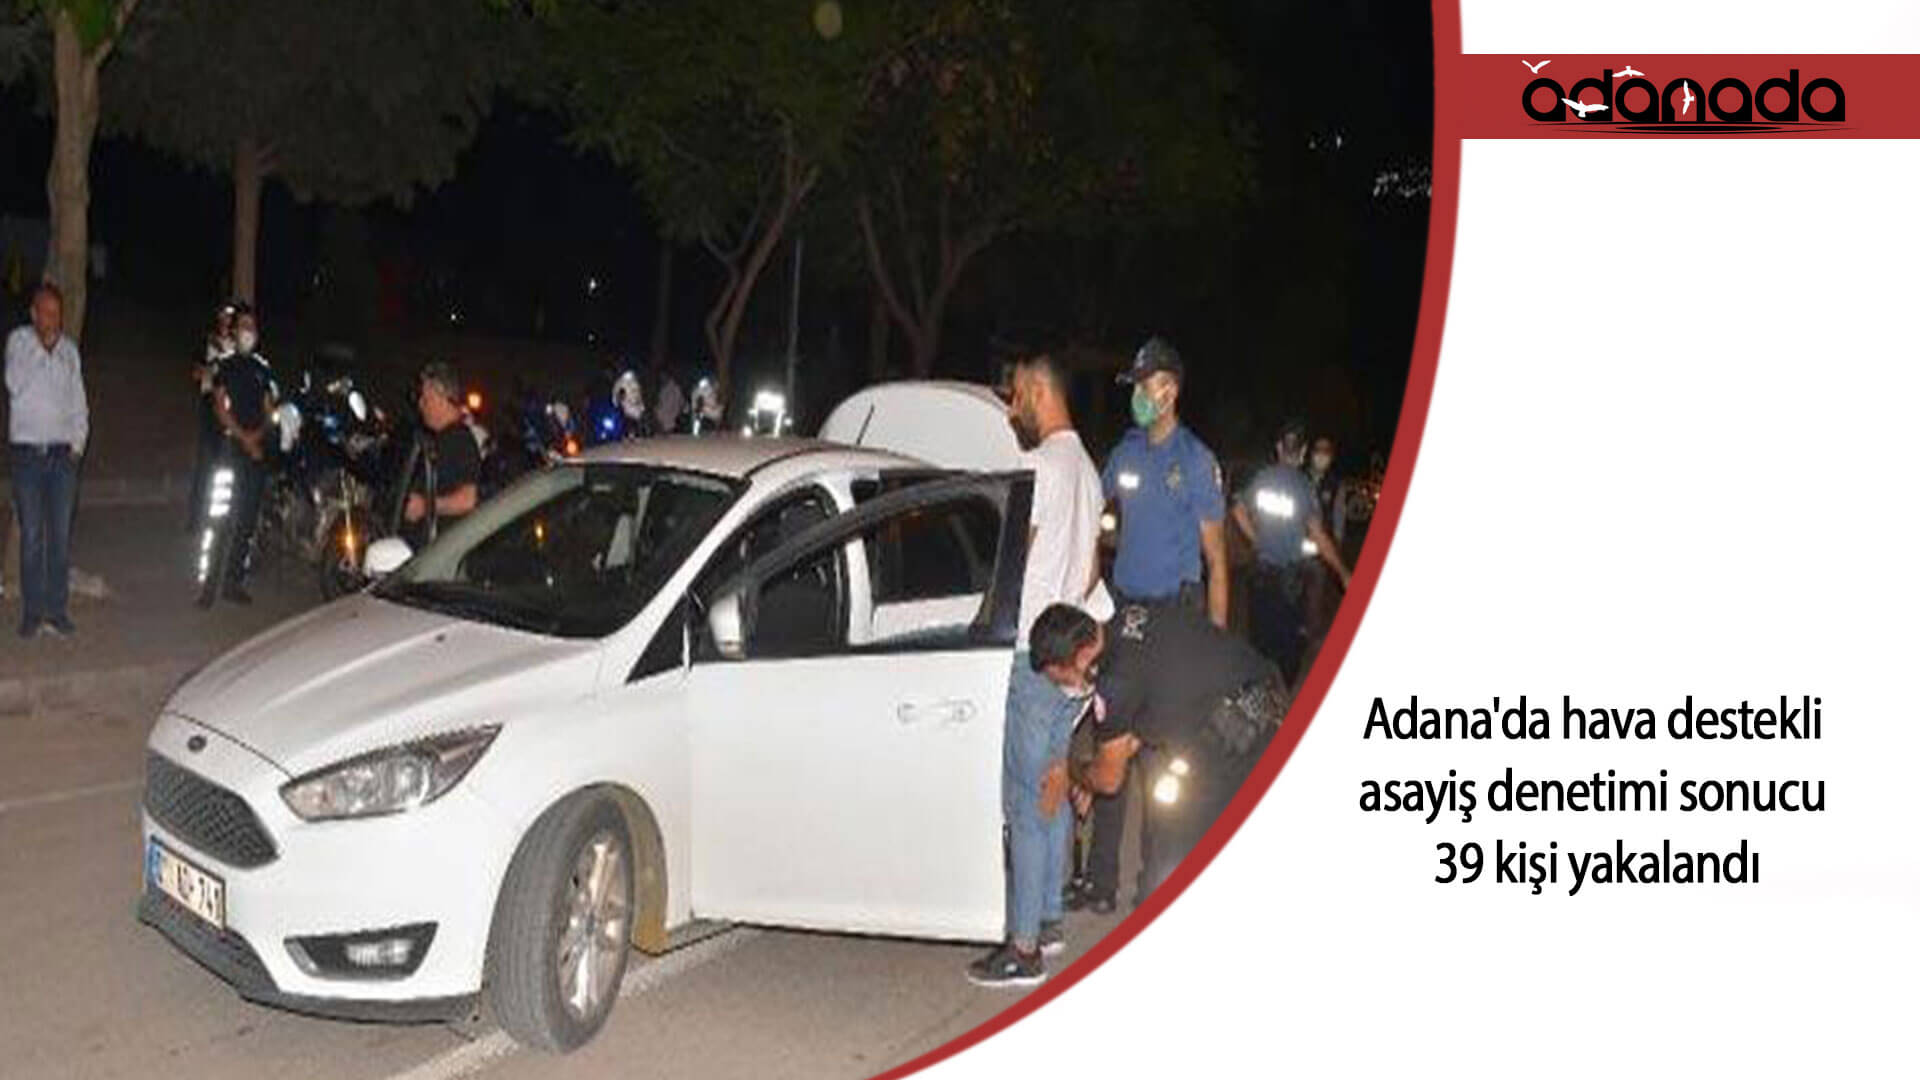 Adana’da hava destekli asayiş denetimi sonucu 39 kişi yakalandı